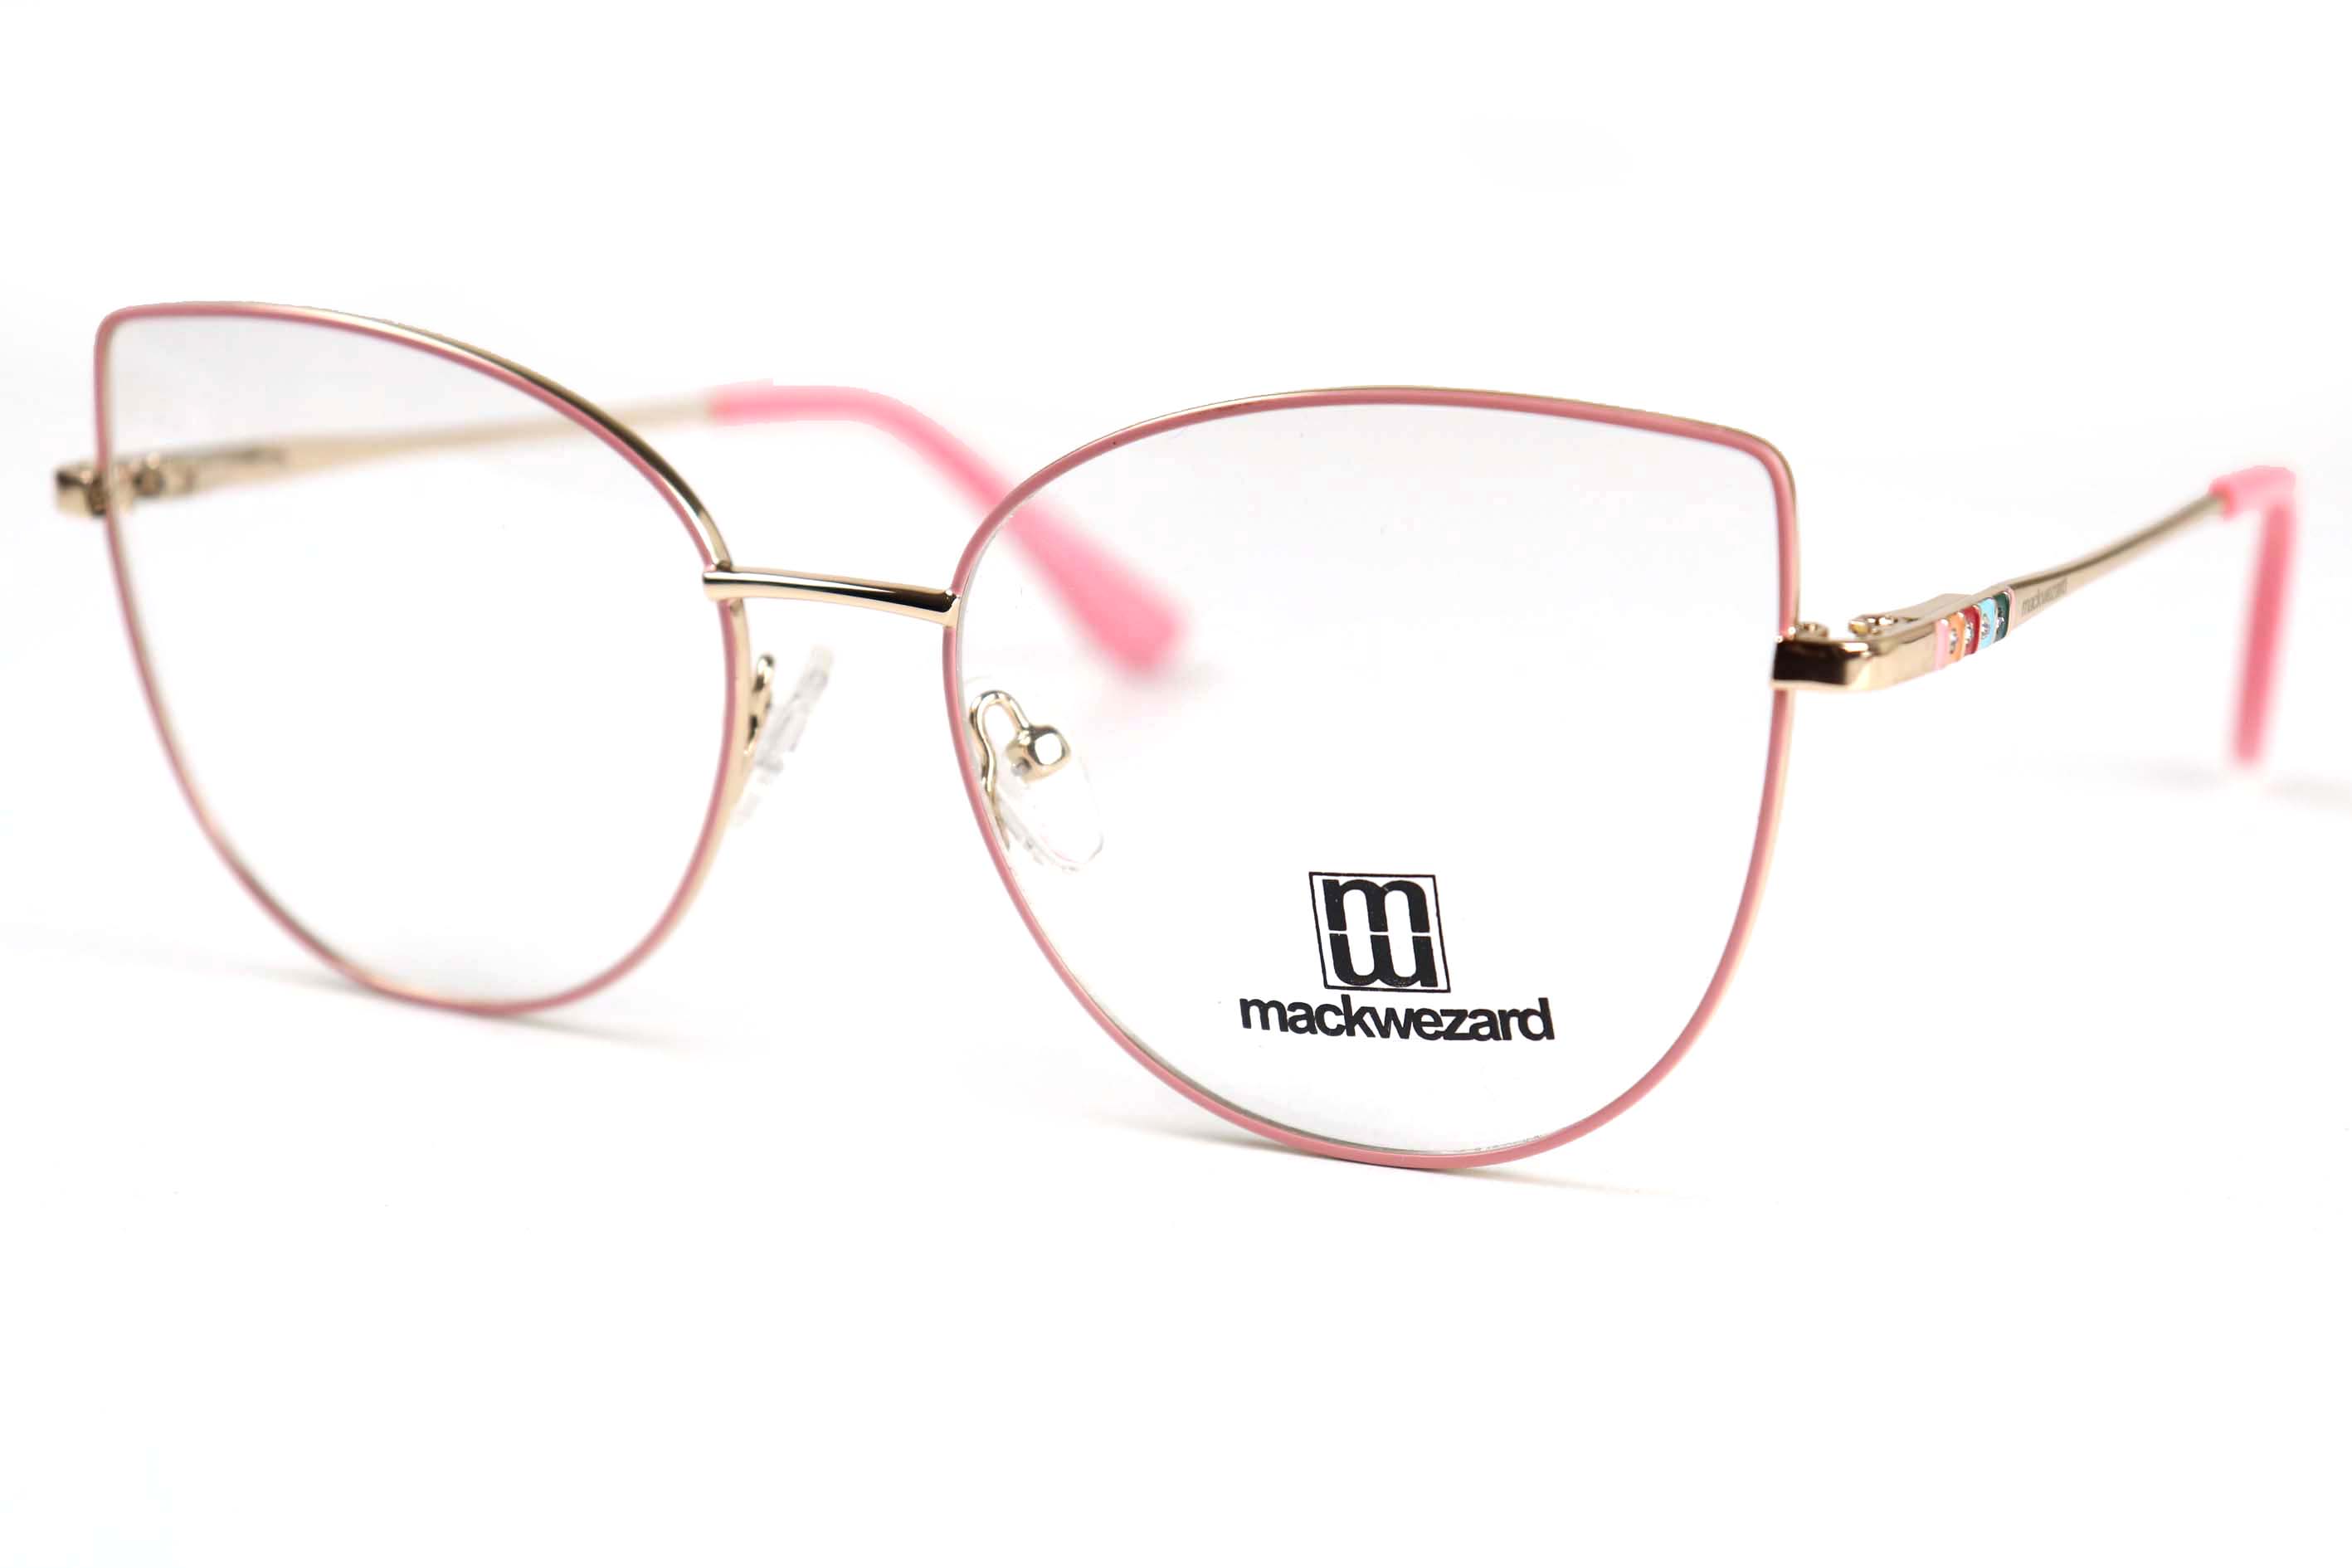 Mackwezard Eyeglasses- 1005-C5-54-18-140